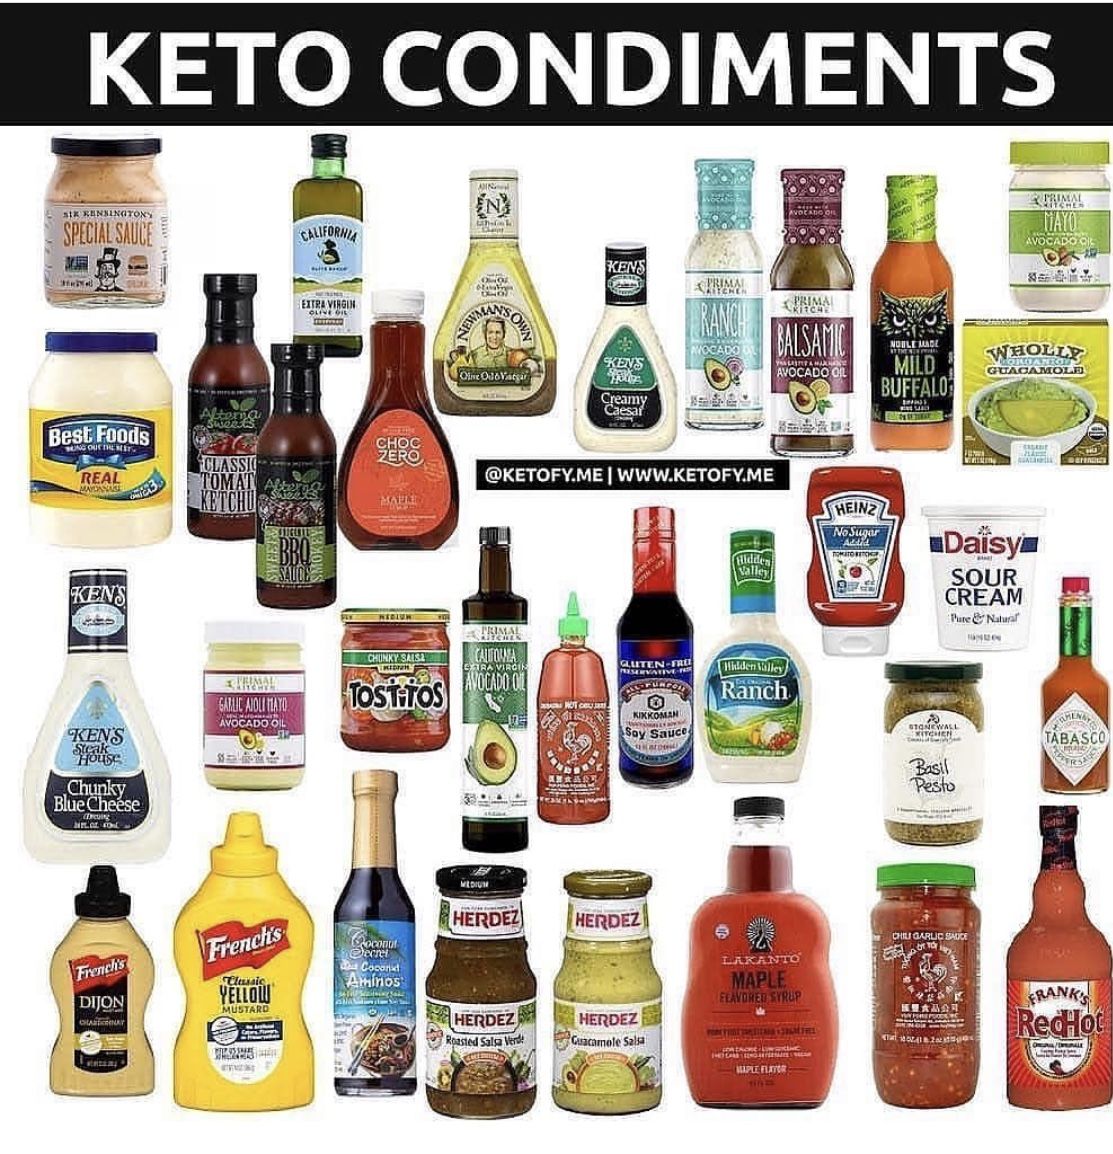 Keto Condiments